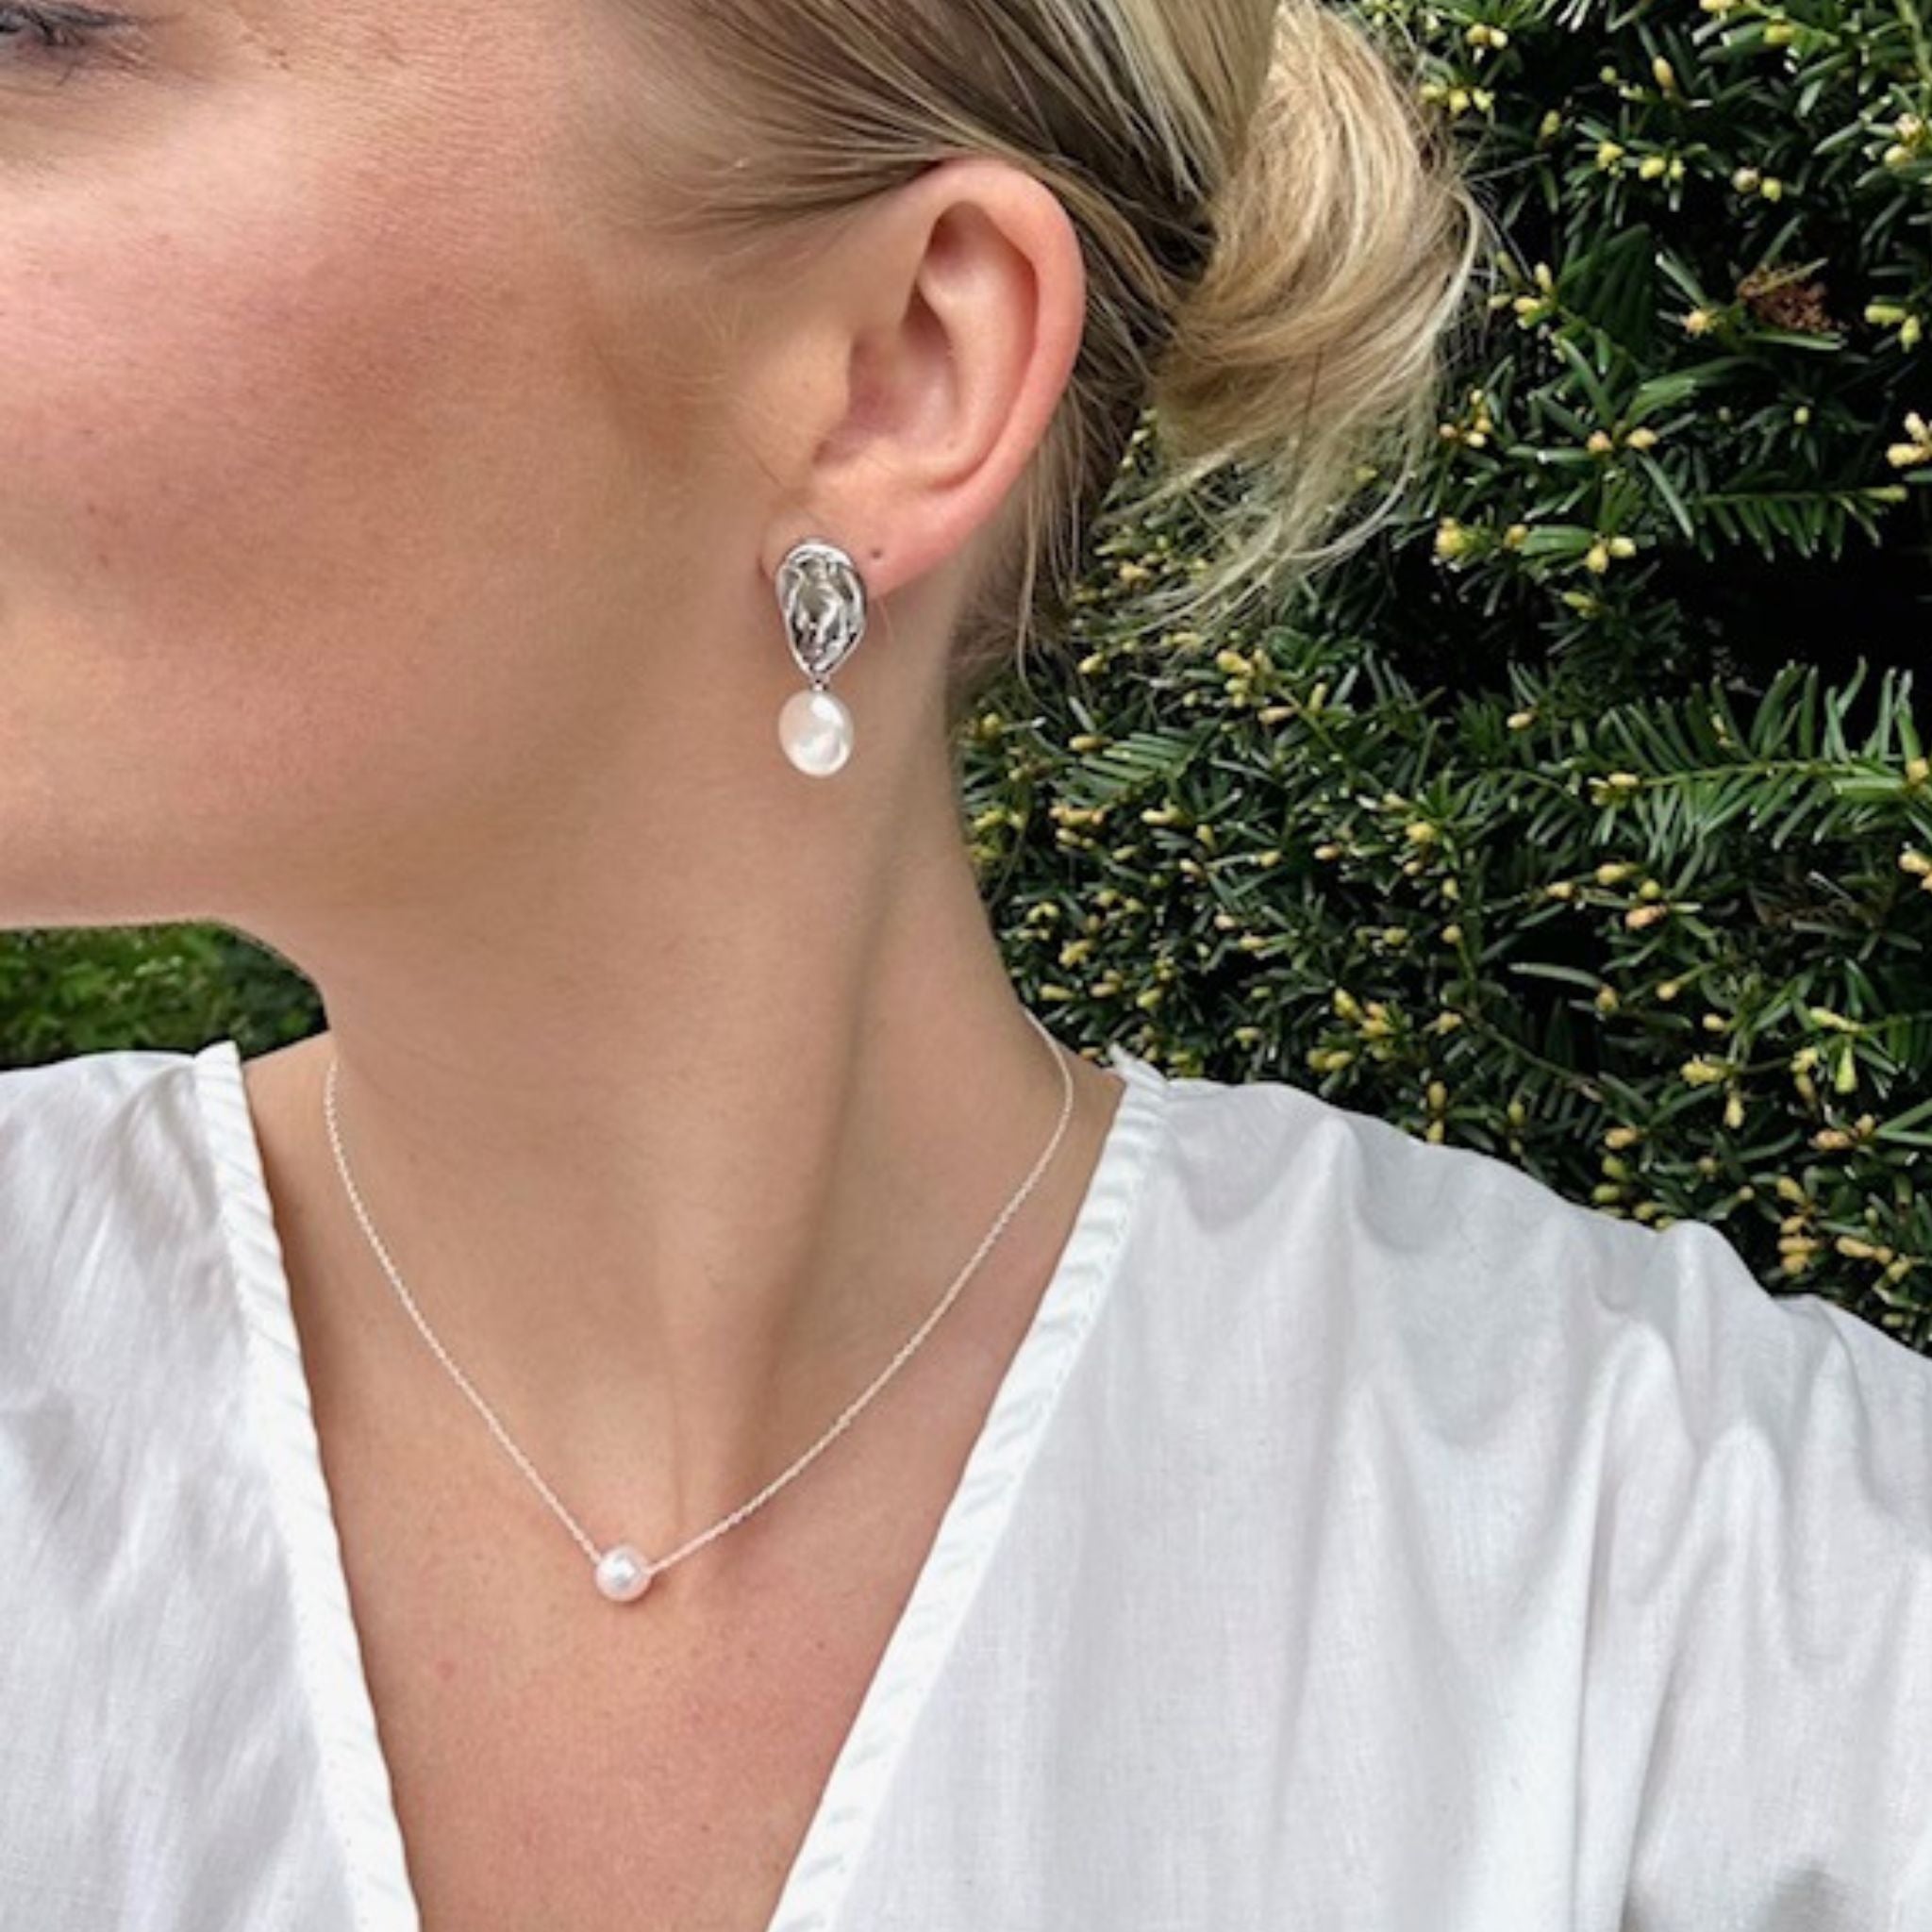 Pearl earrings - free form